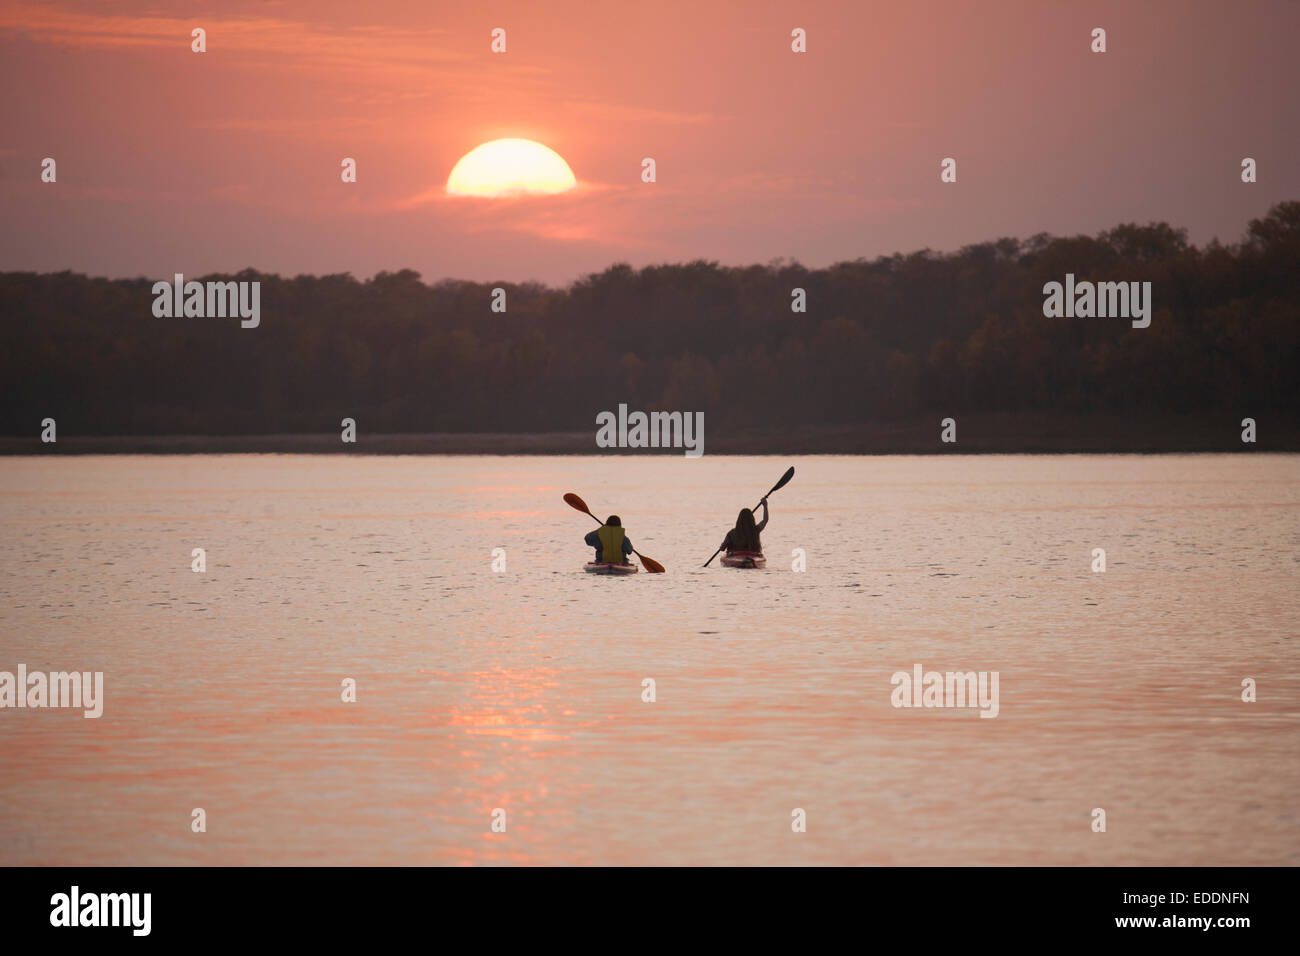 Zwei Kajakfahrer bei Sonnenuntergang auf einem ruhigen See. Stockfoto